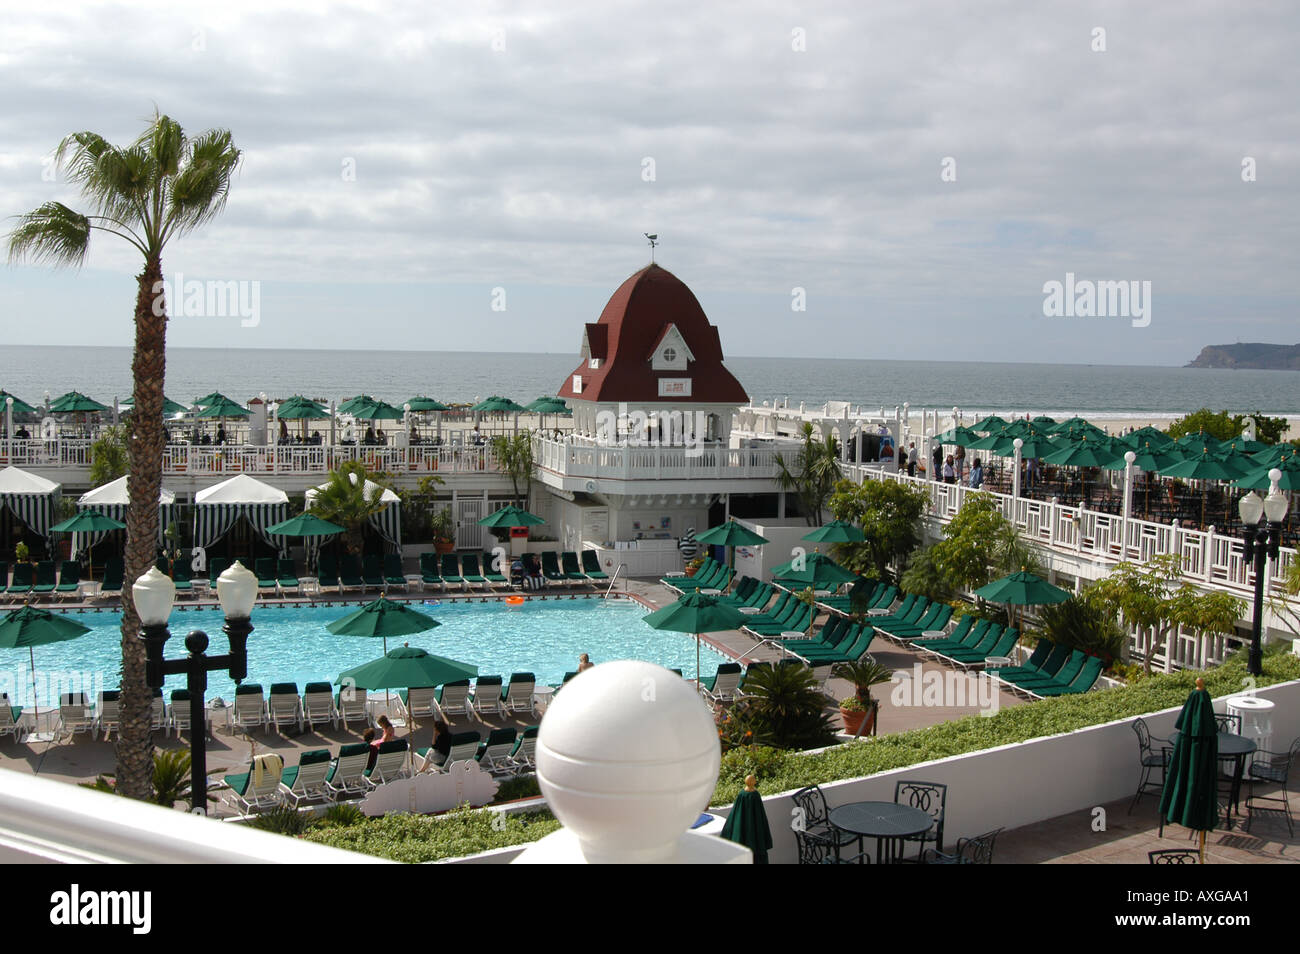 Piscina di lusso Hotel del Coronado, San Diego, California, Stati Uniti d'America Foto Stock